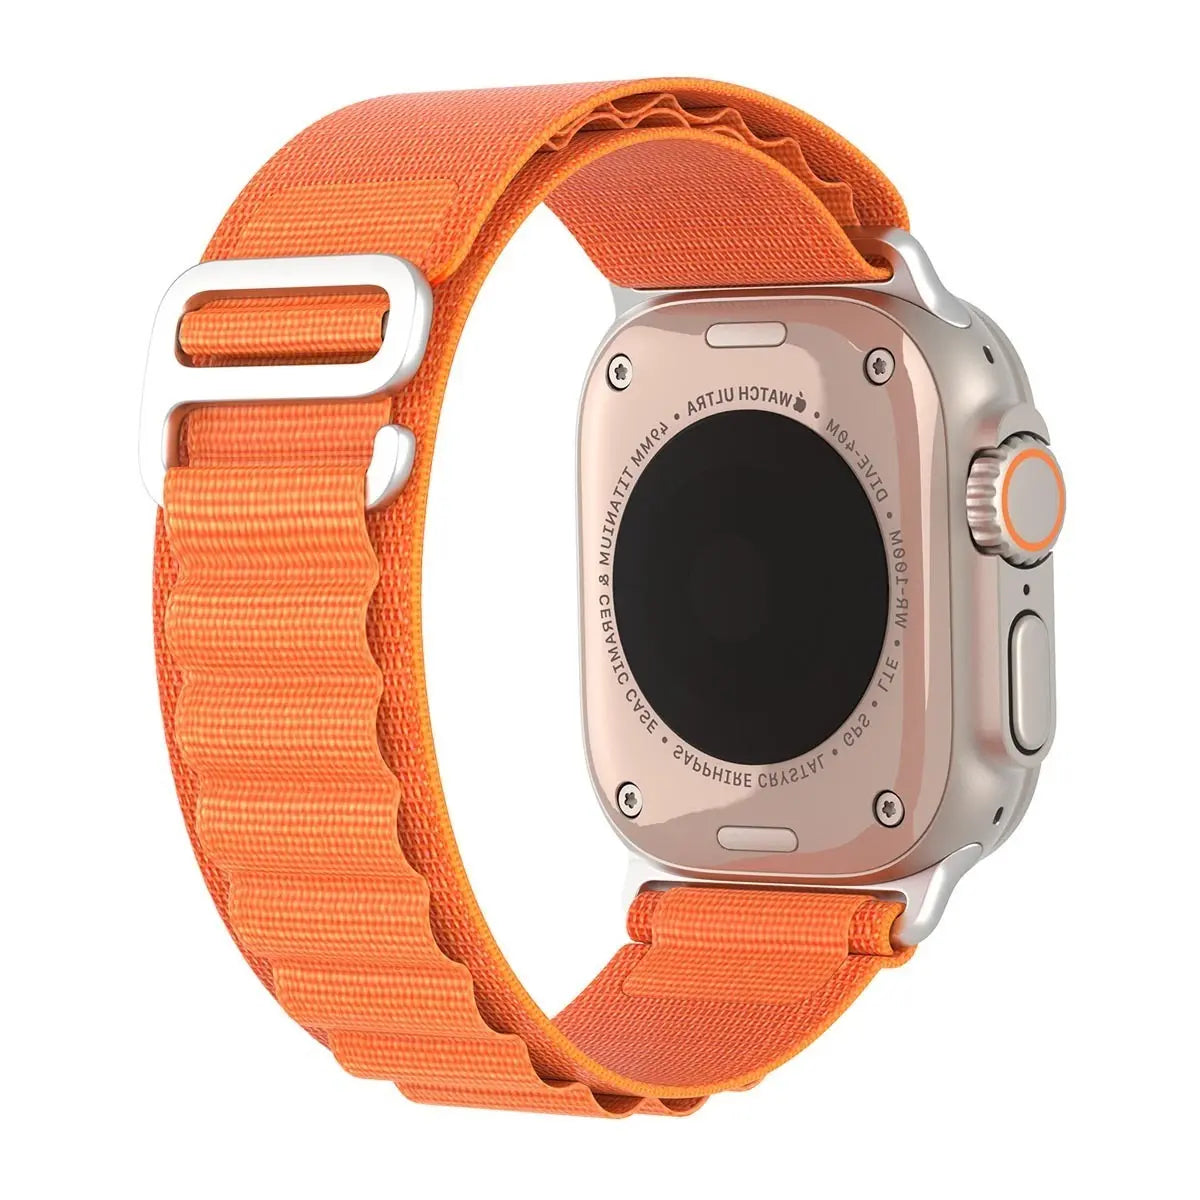 Baksidan av Apple Watch med orange Alpine Loop-band, som visar spännet.